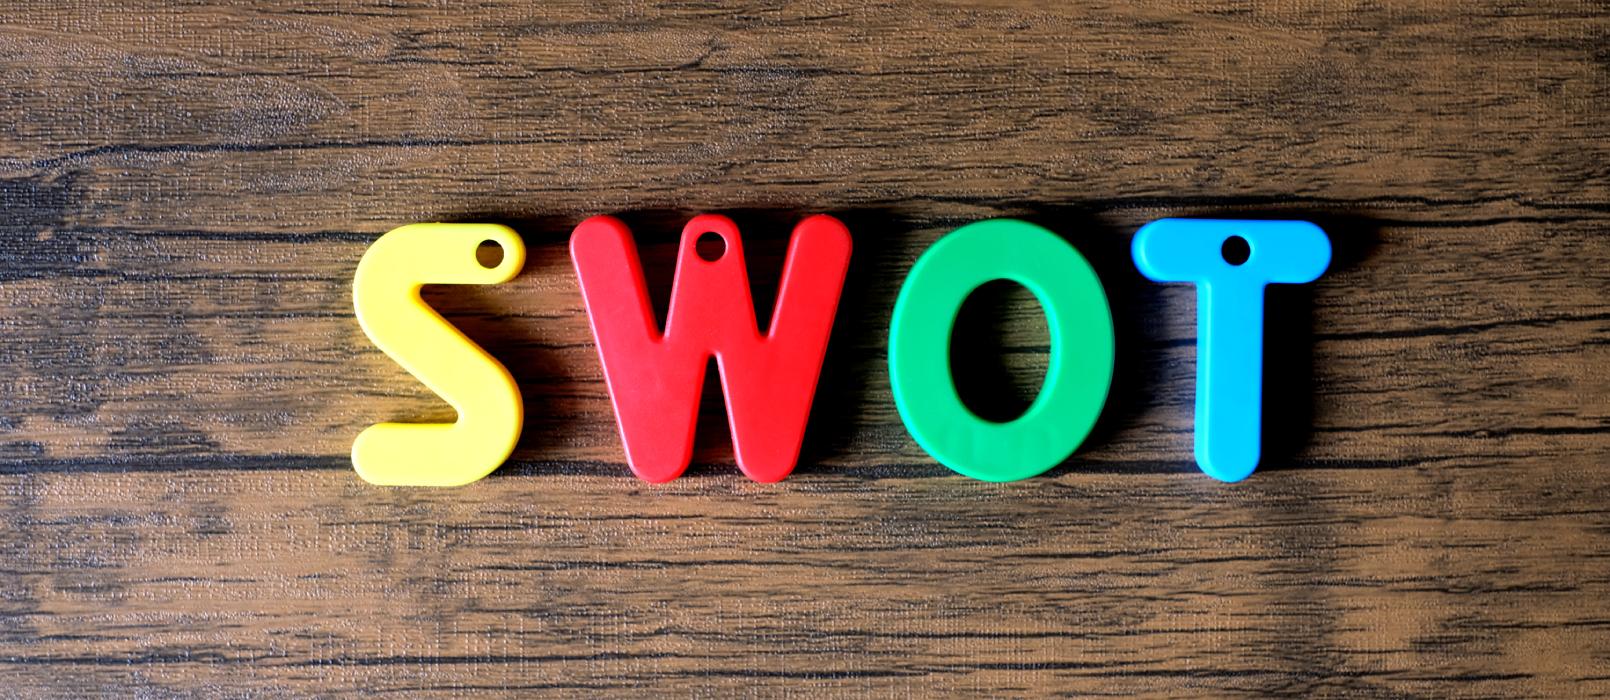 Analiza SWOT - na czym polega oraz jak ją zastosować w przedsiębiorstwie?